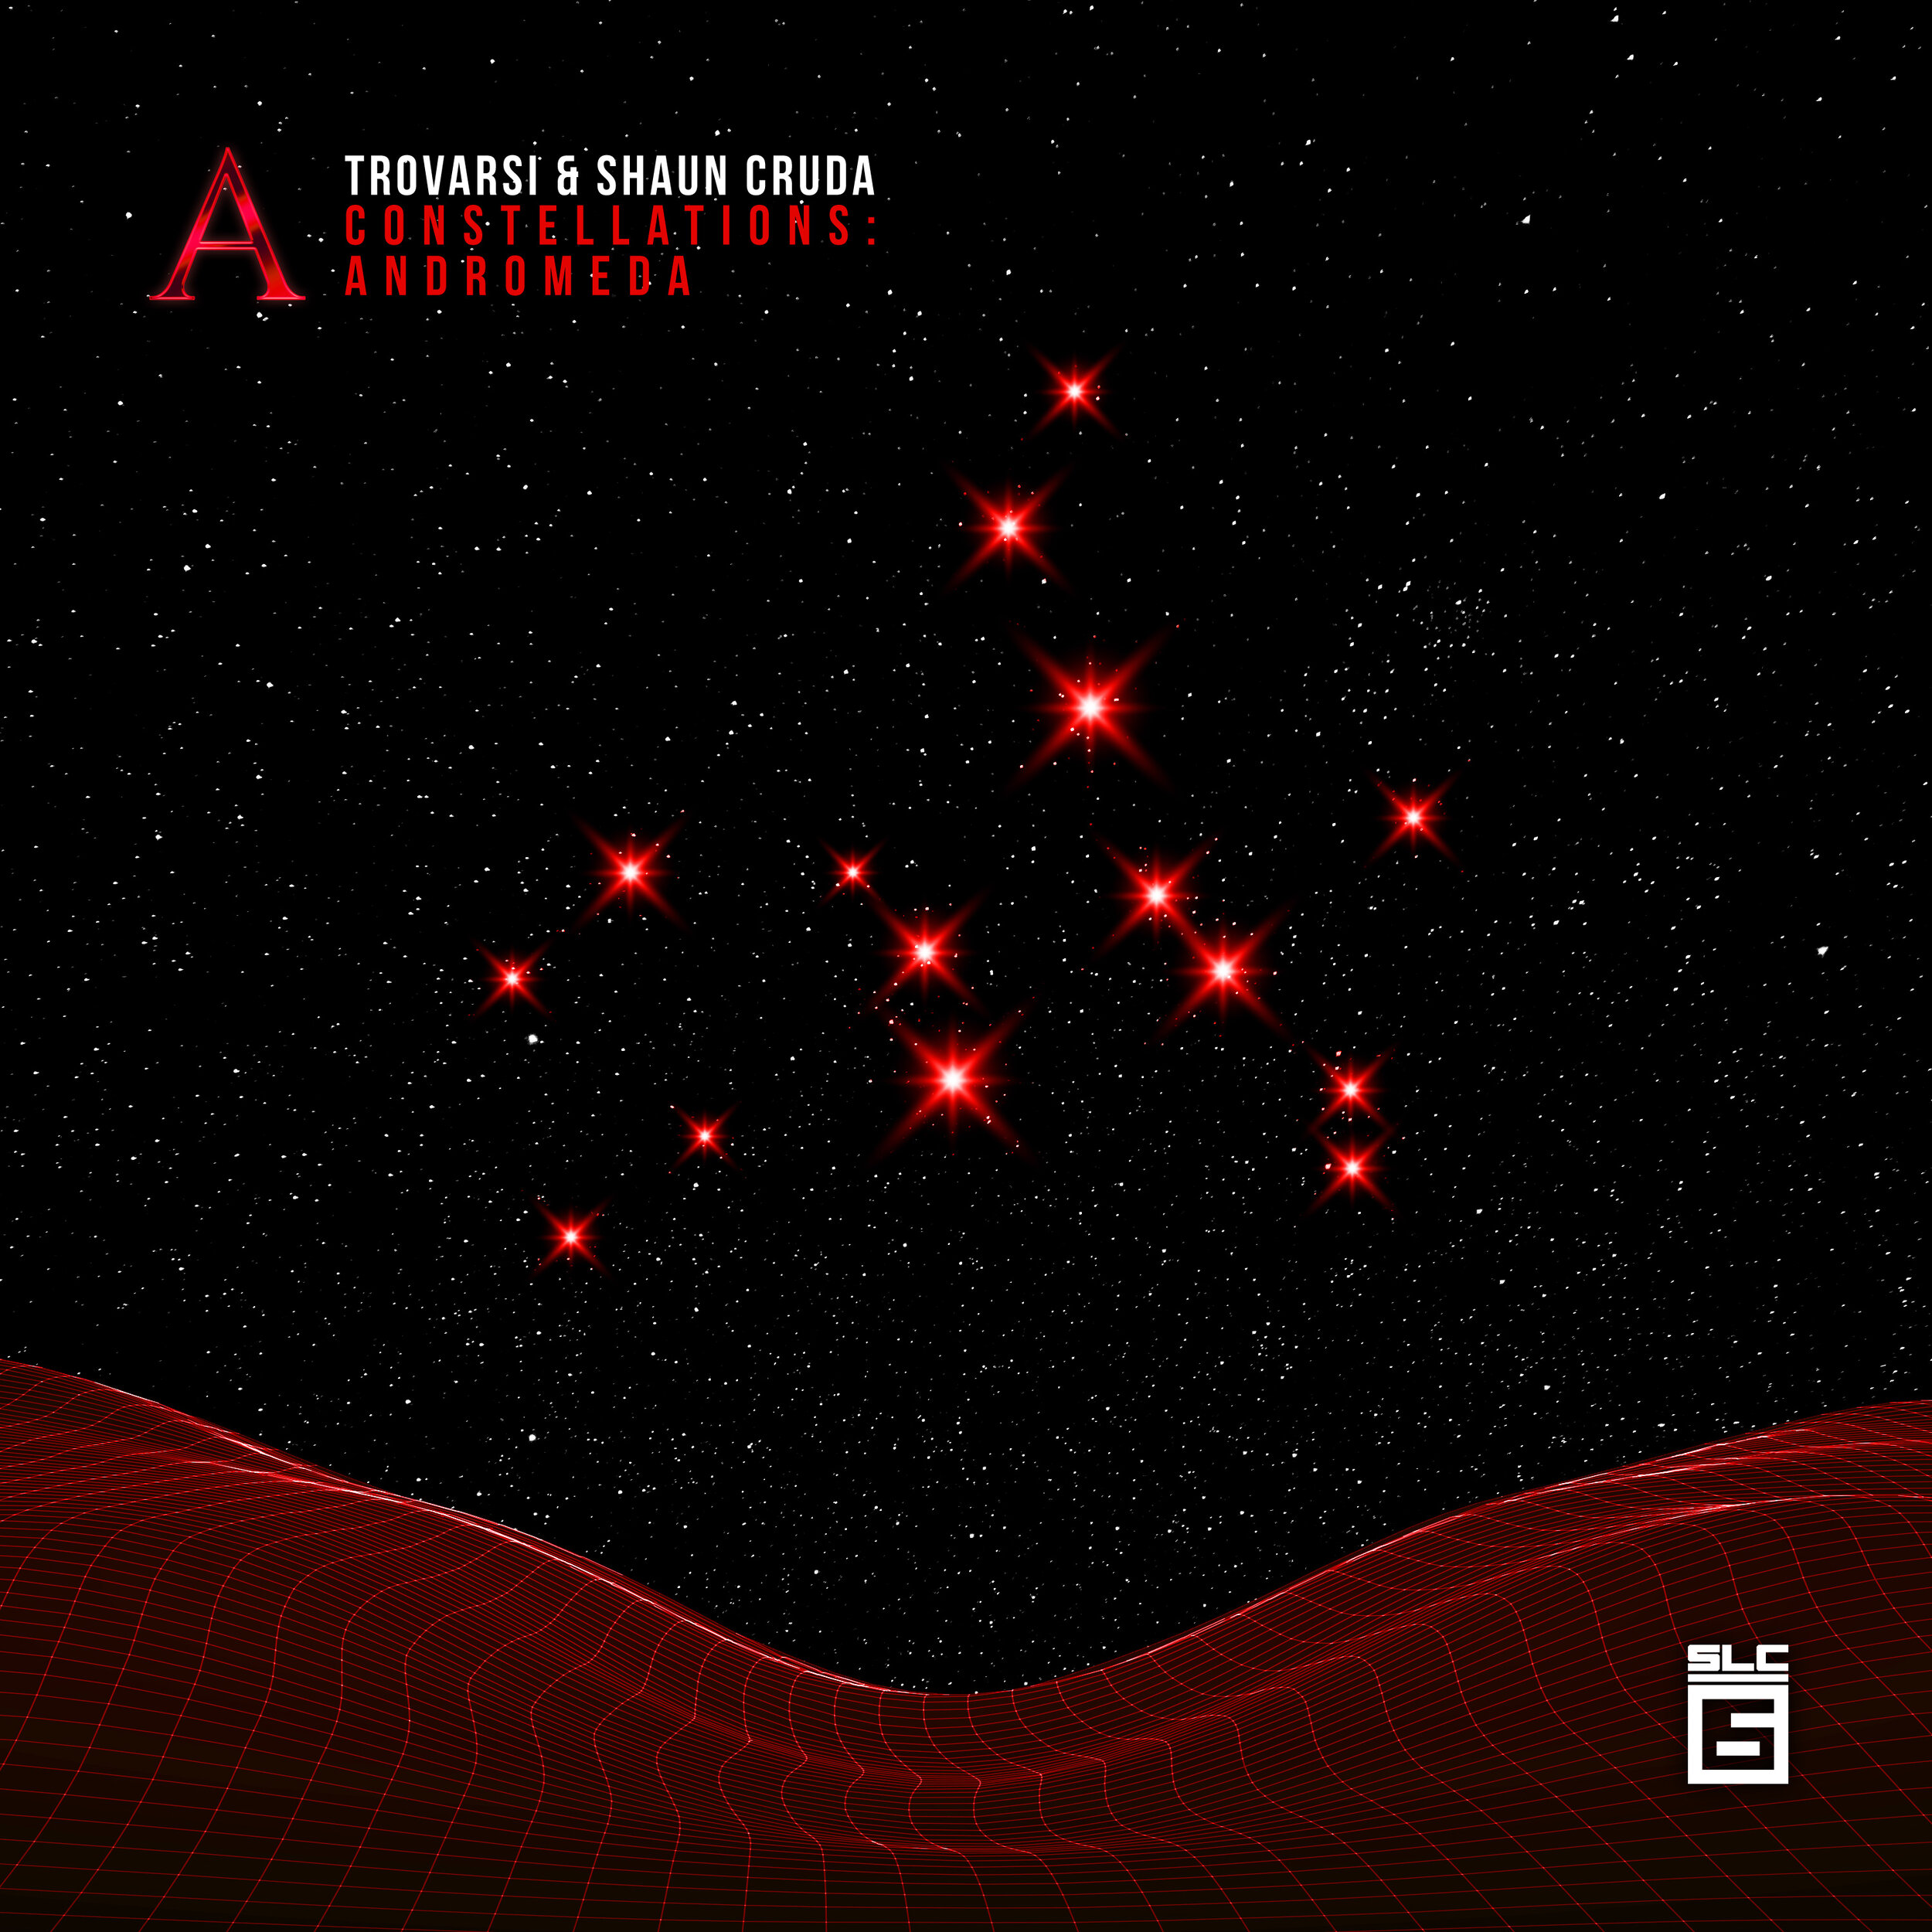 Constellations: Andromeda mixed by Trovarsi & Shaun Cruda